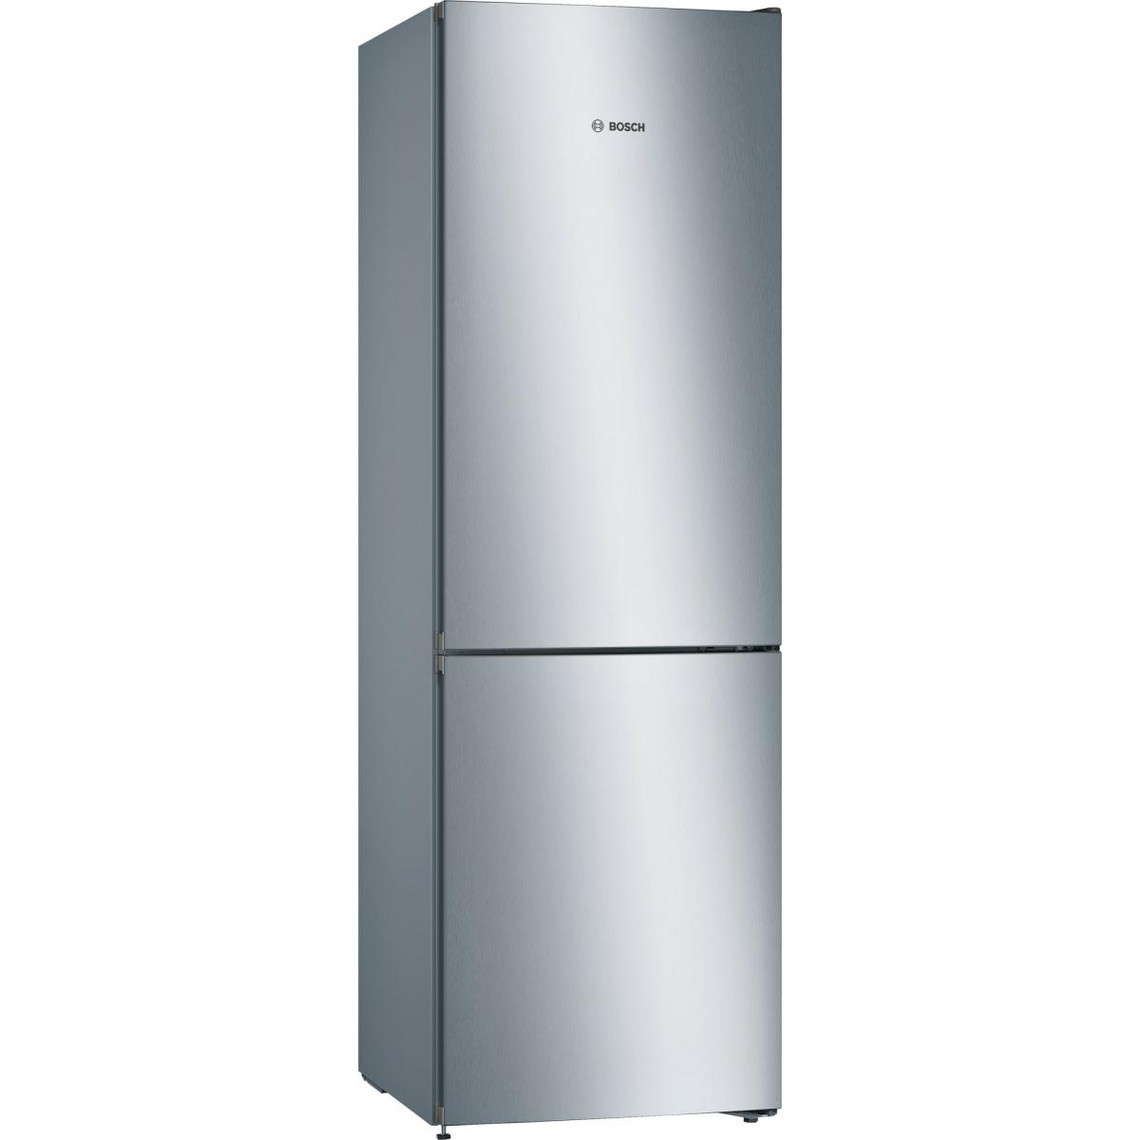 Bosch BOSCH - KGN36VLED - Réfrigérateur - combiné - pose-libre - SER4 - inox - look - Classe - énergie - A++ - Classe - clima